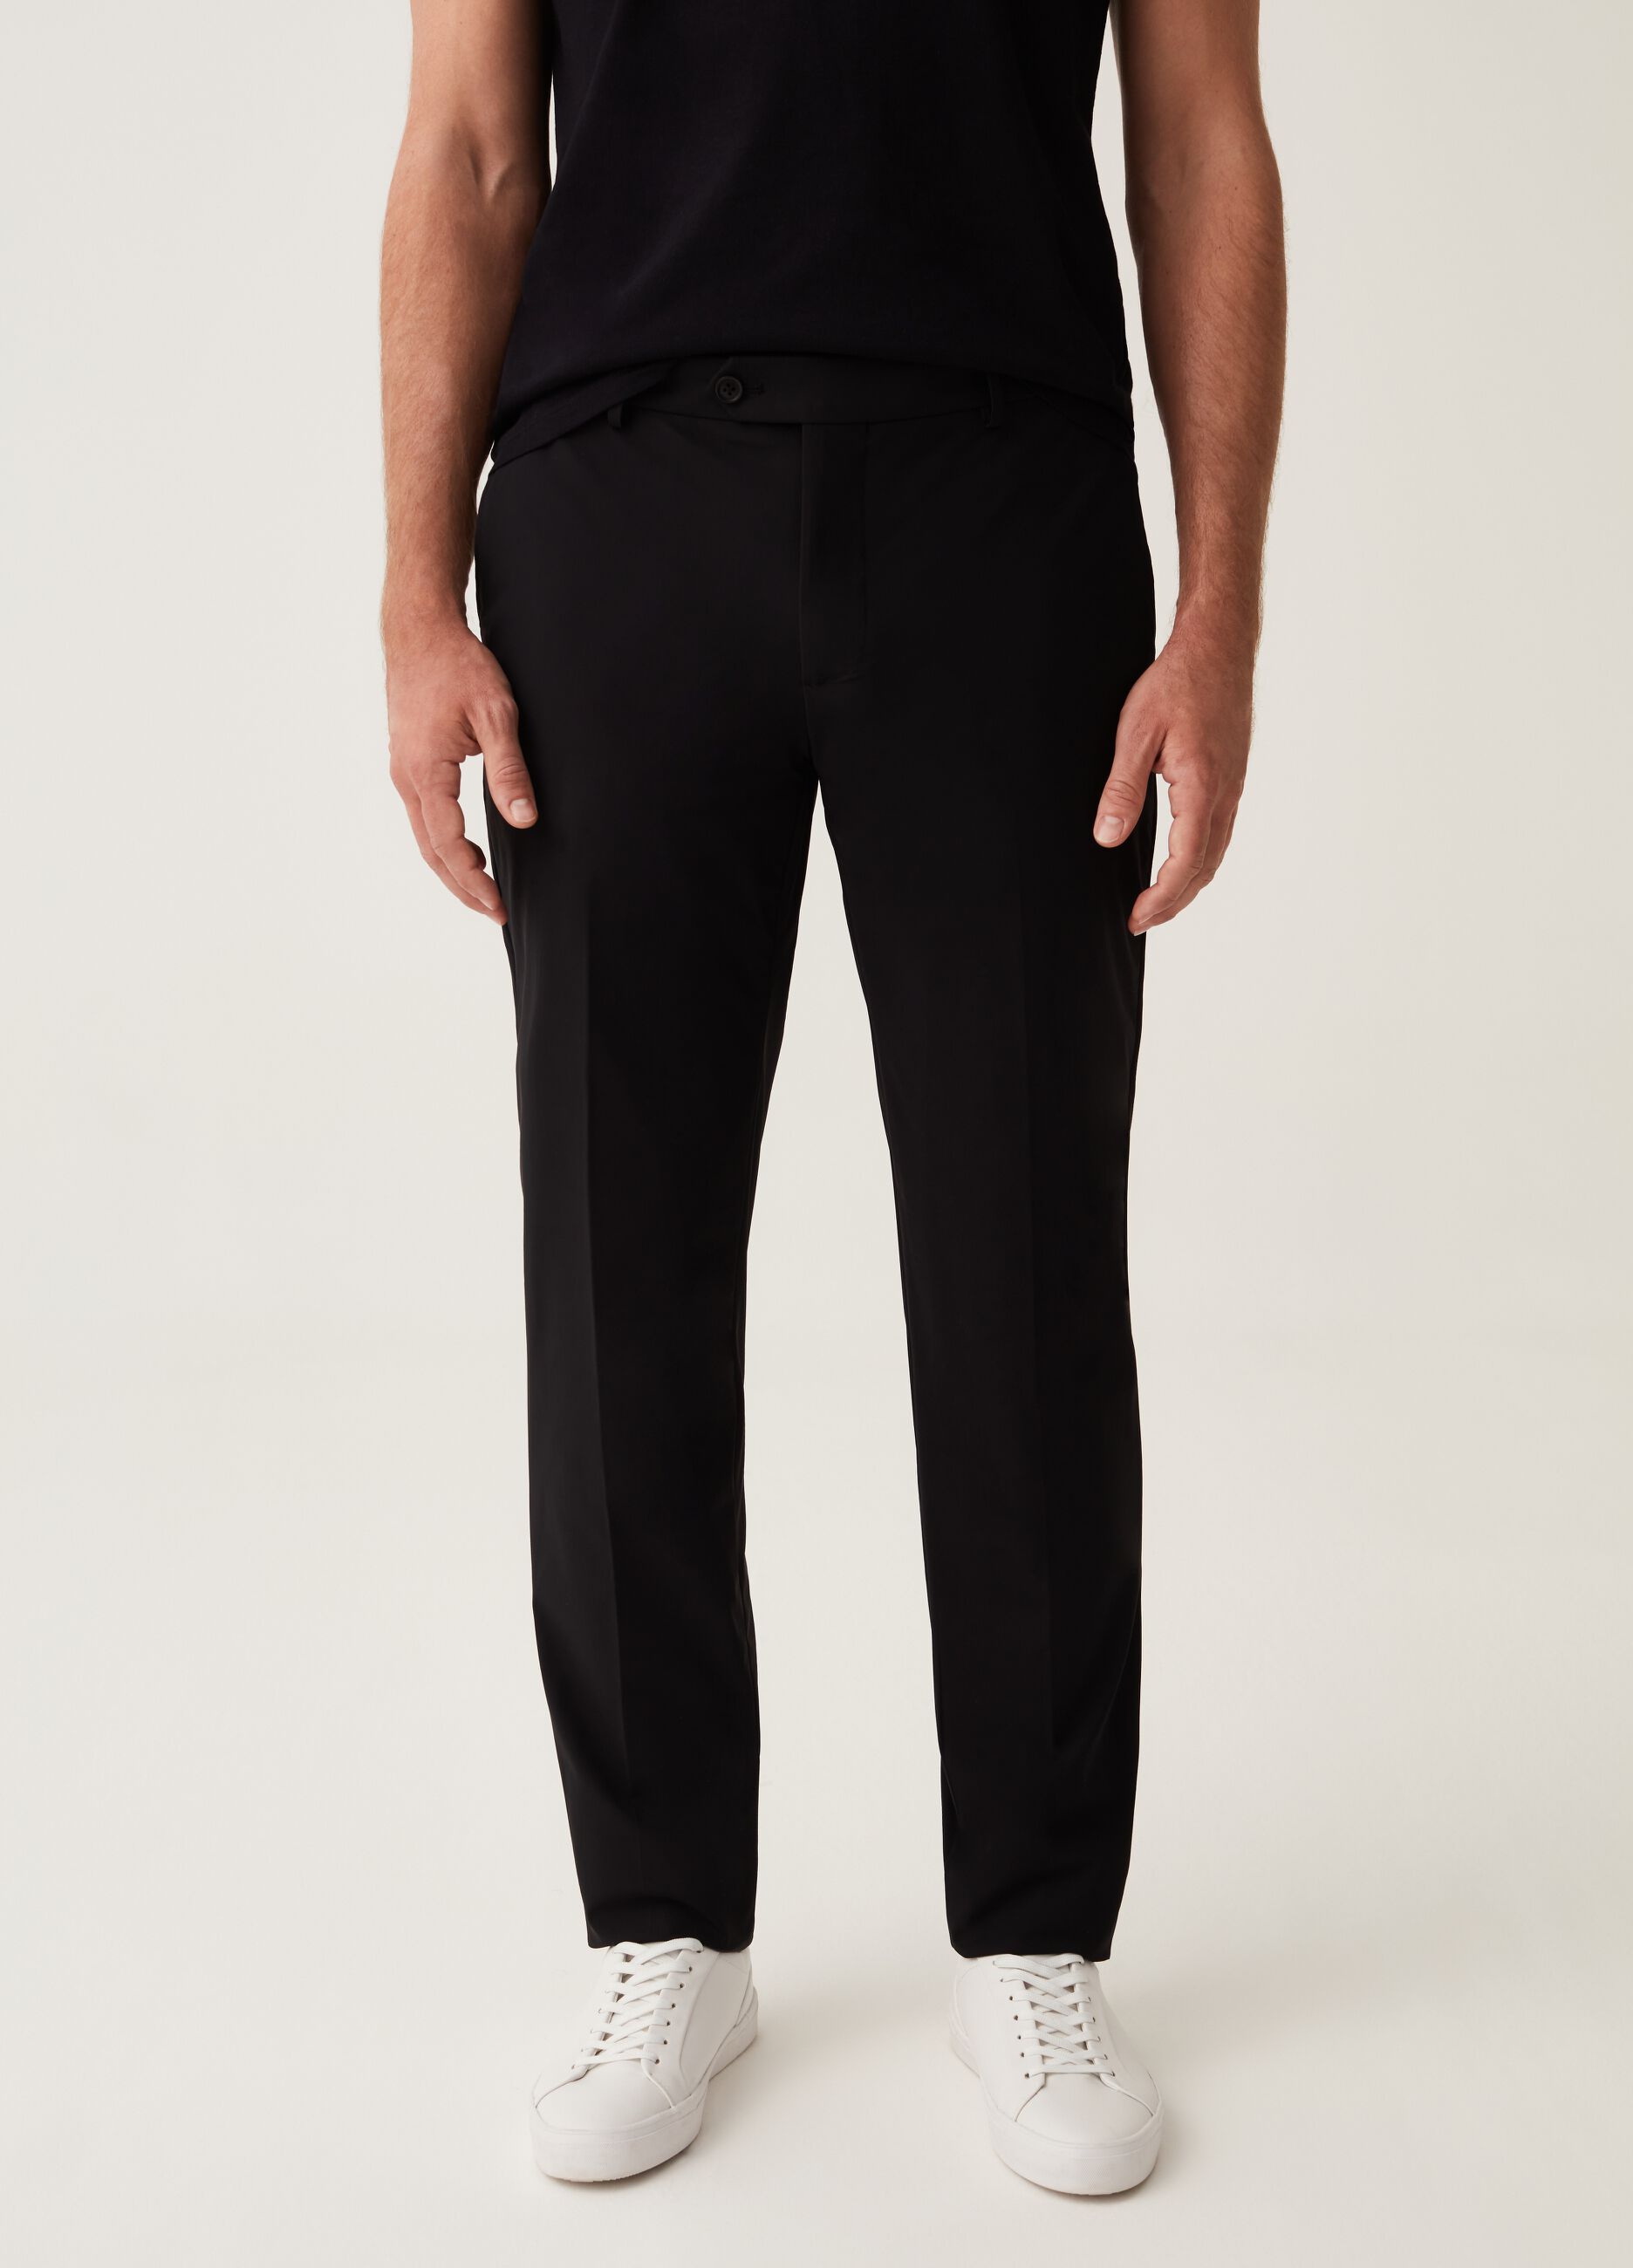 Pantalone slim fit in tessuto tecnico nero